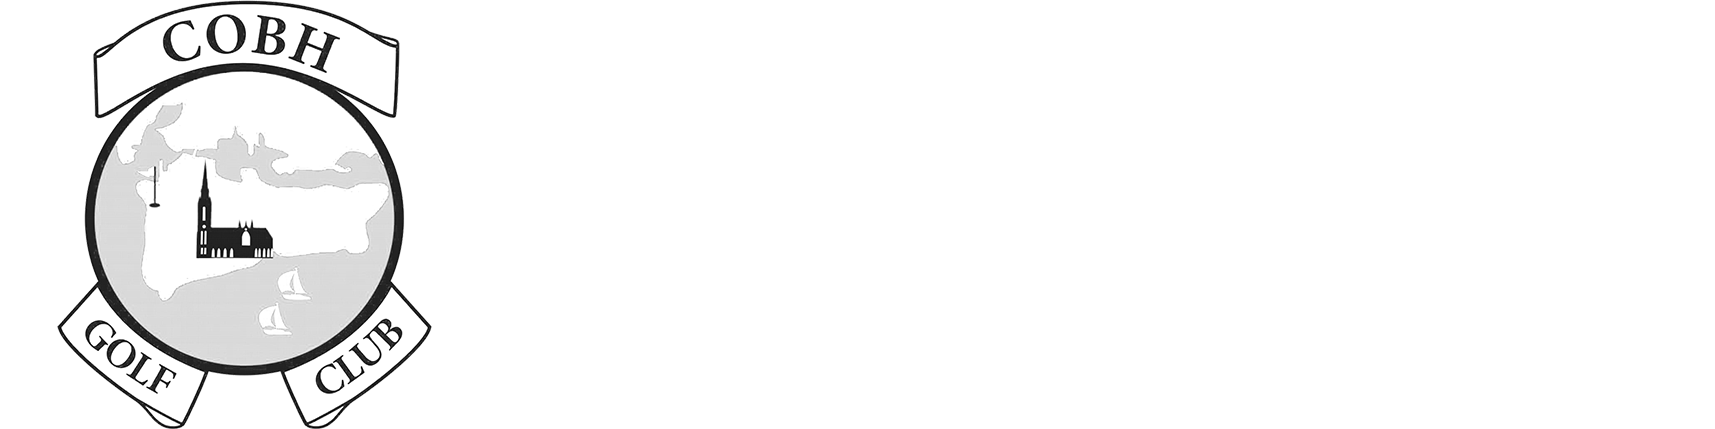 COBH GOLF CLUB